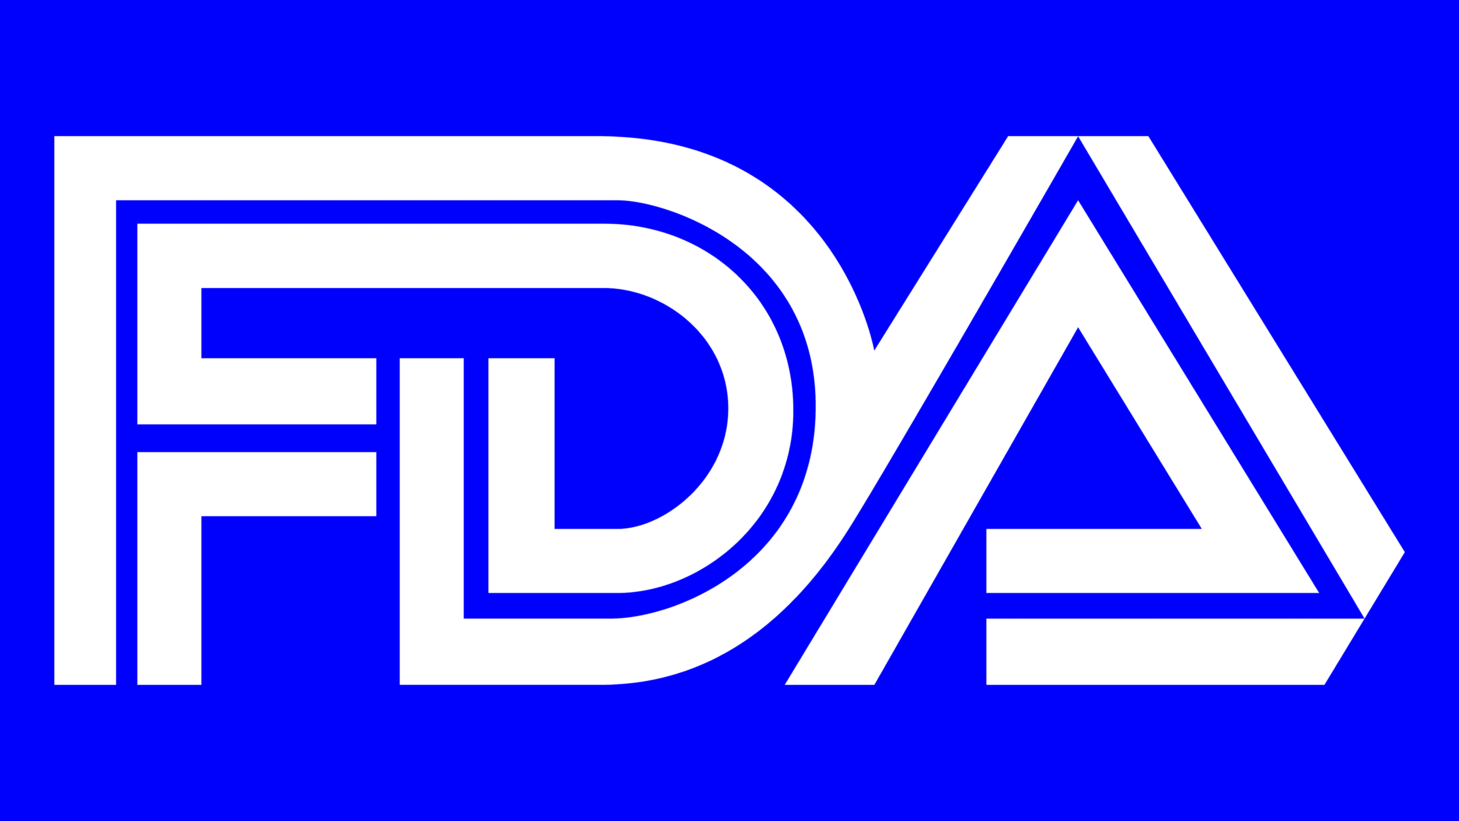 Fda symbol